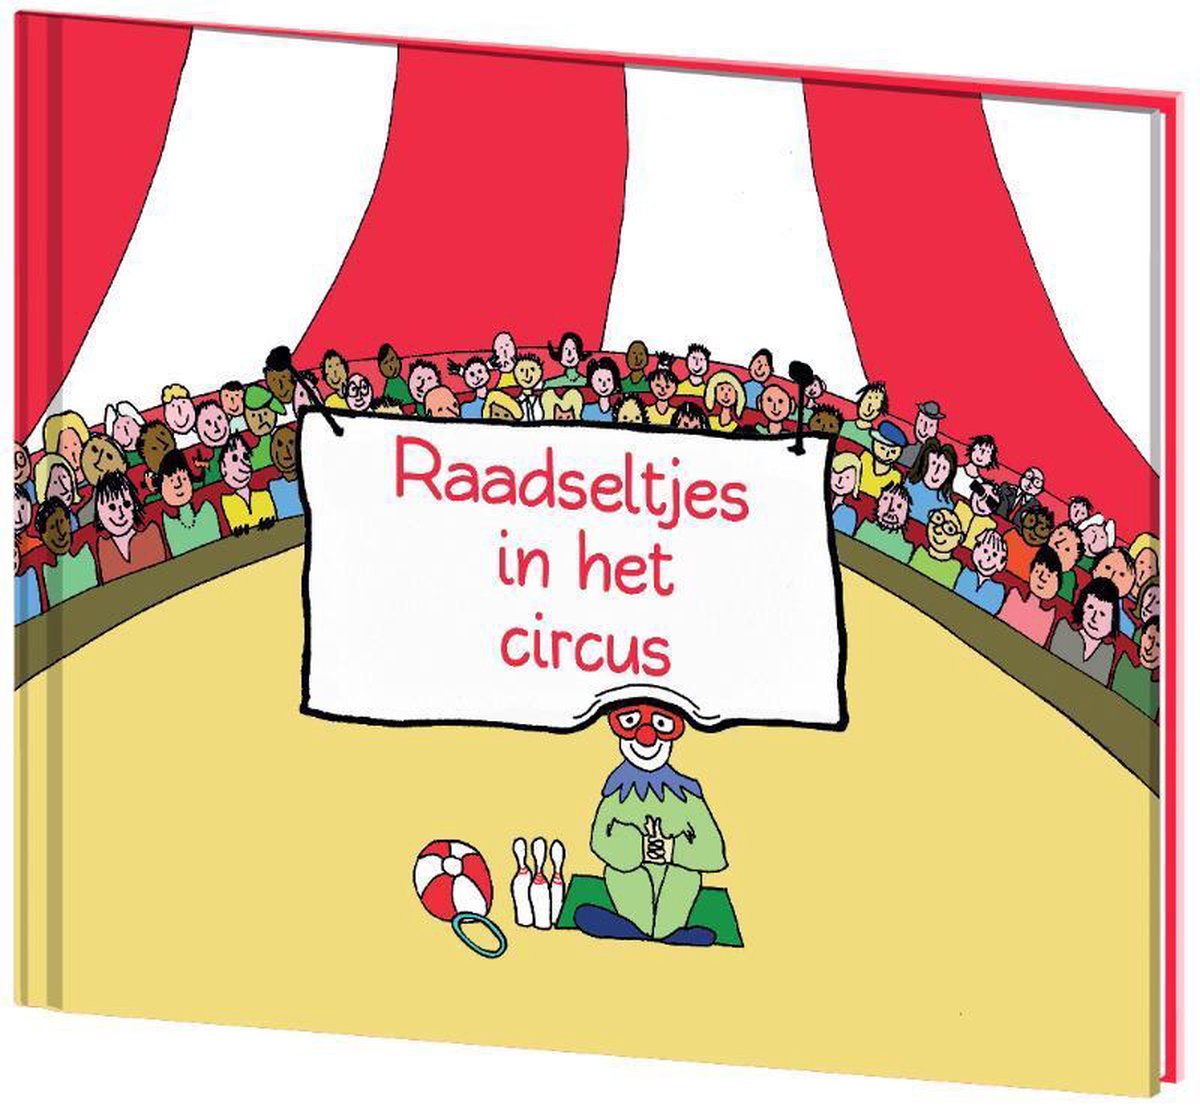 Raadseltjes in het circus